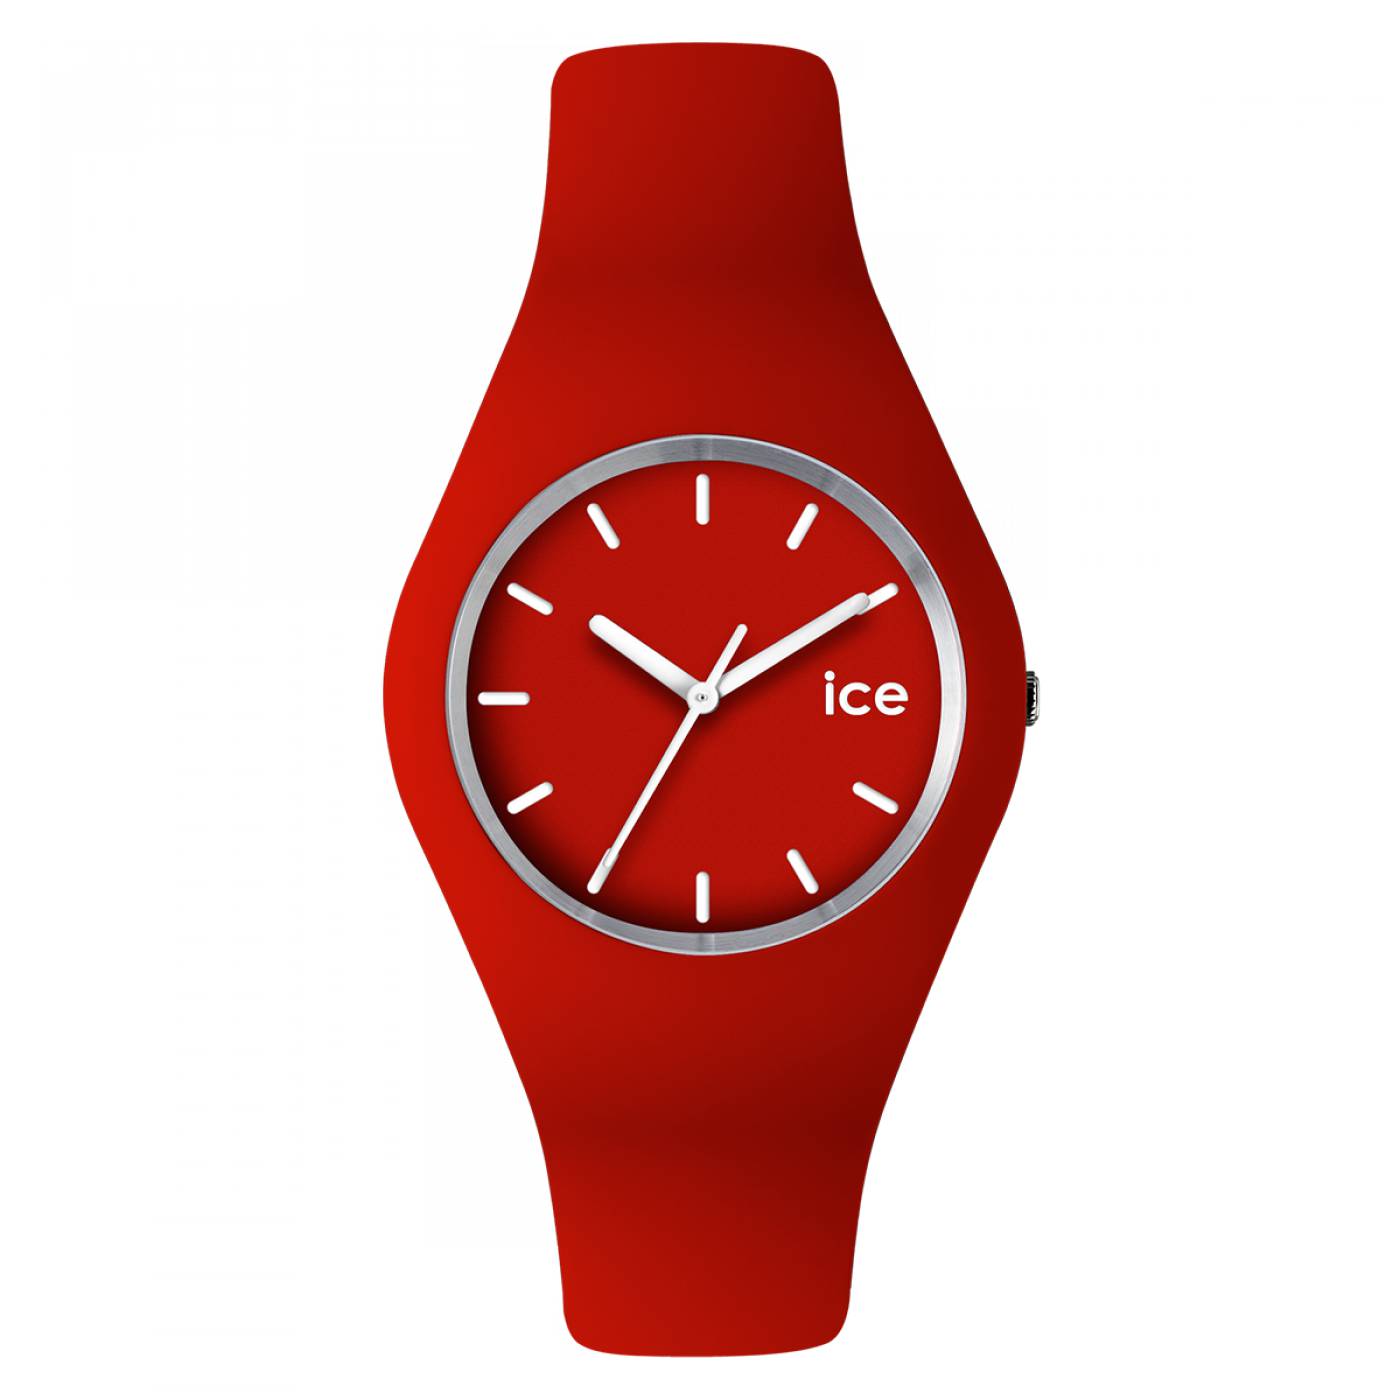 Часы айс. Часы Ice. Часы Ice watch. Ice watch часы красные. Часы унисекс наручные.